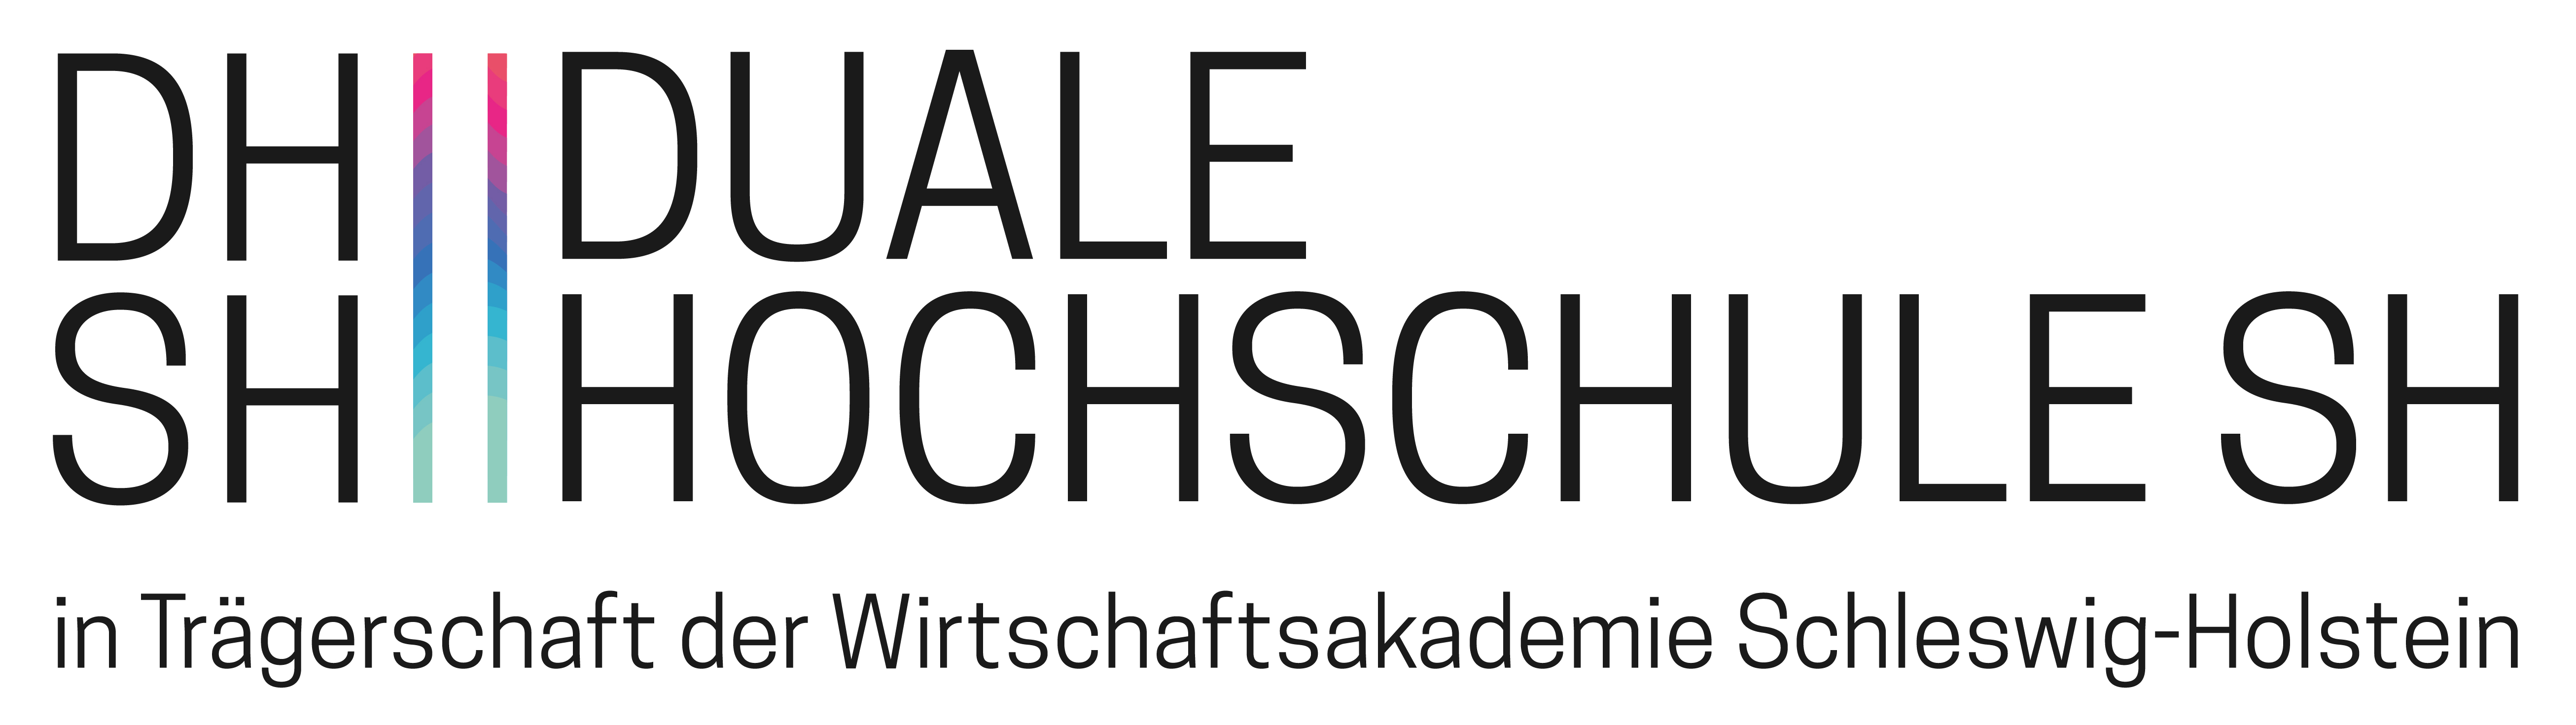 Duale Hochschule Schleswig-Holstein